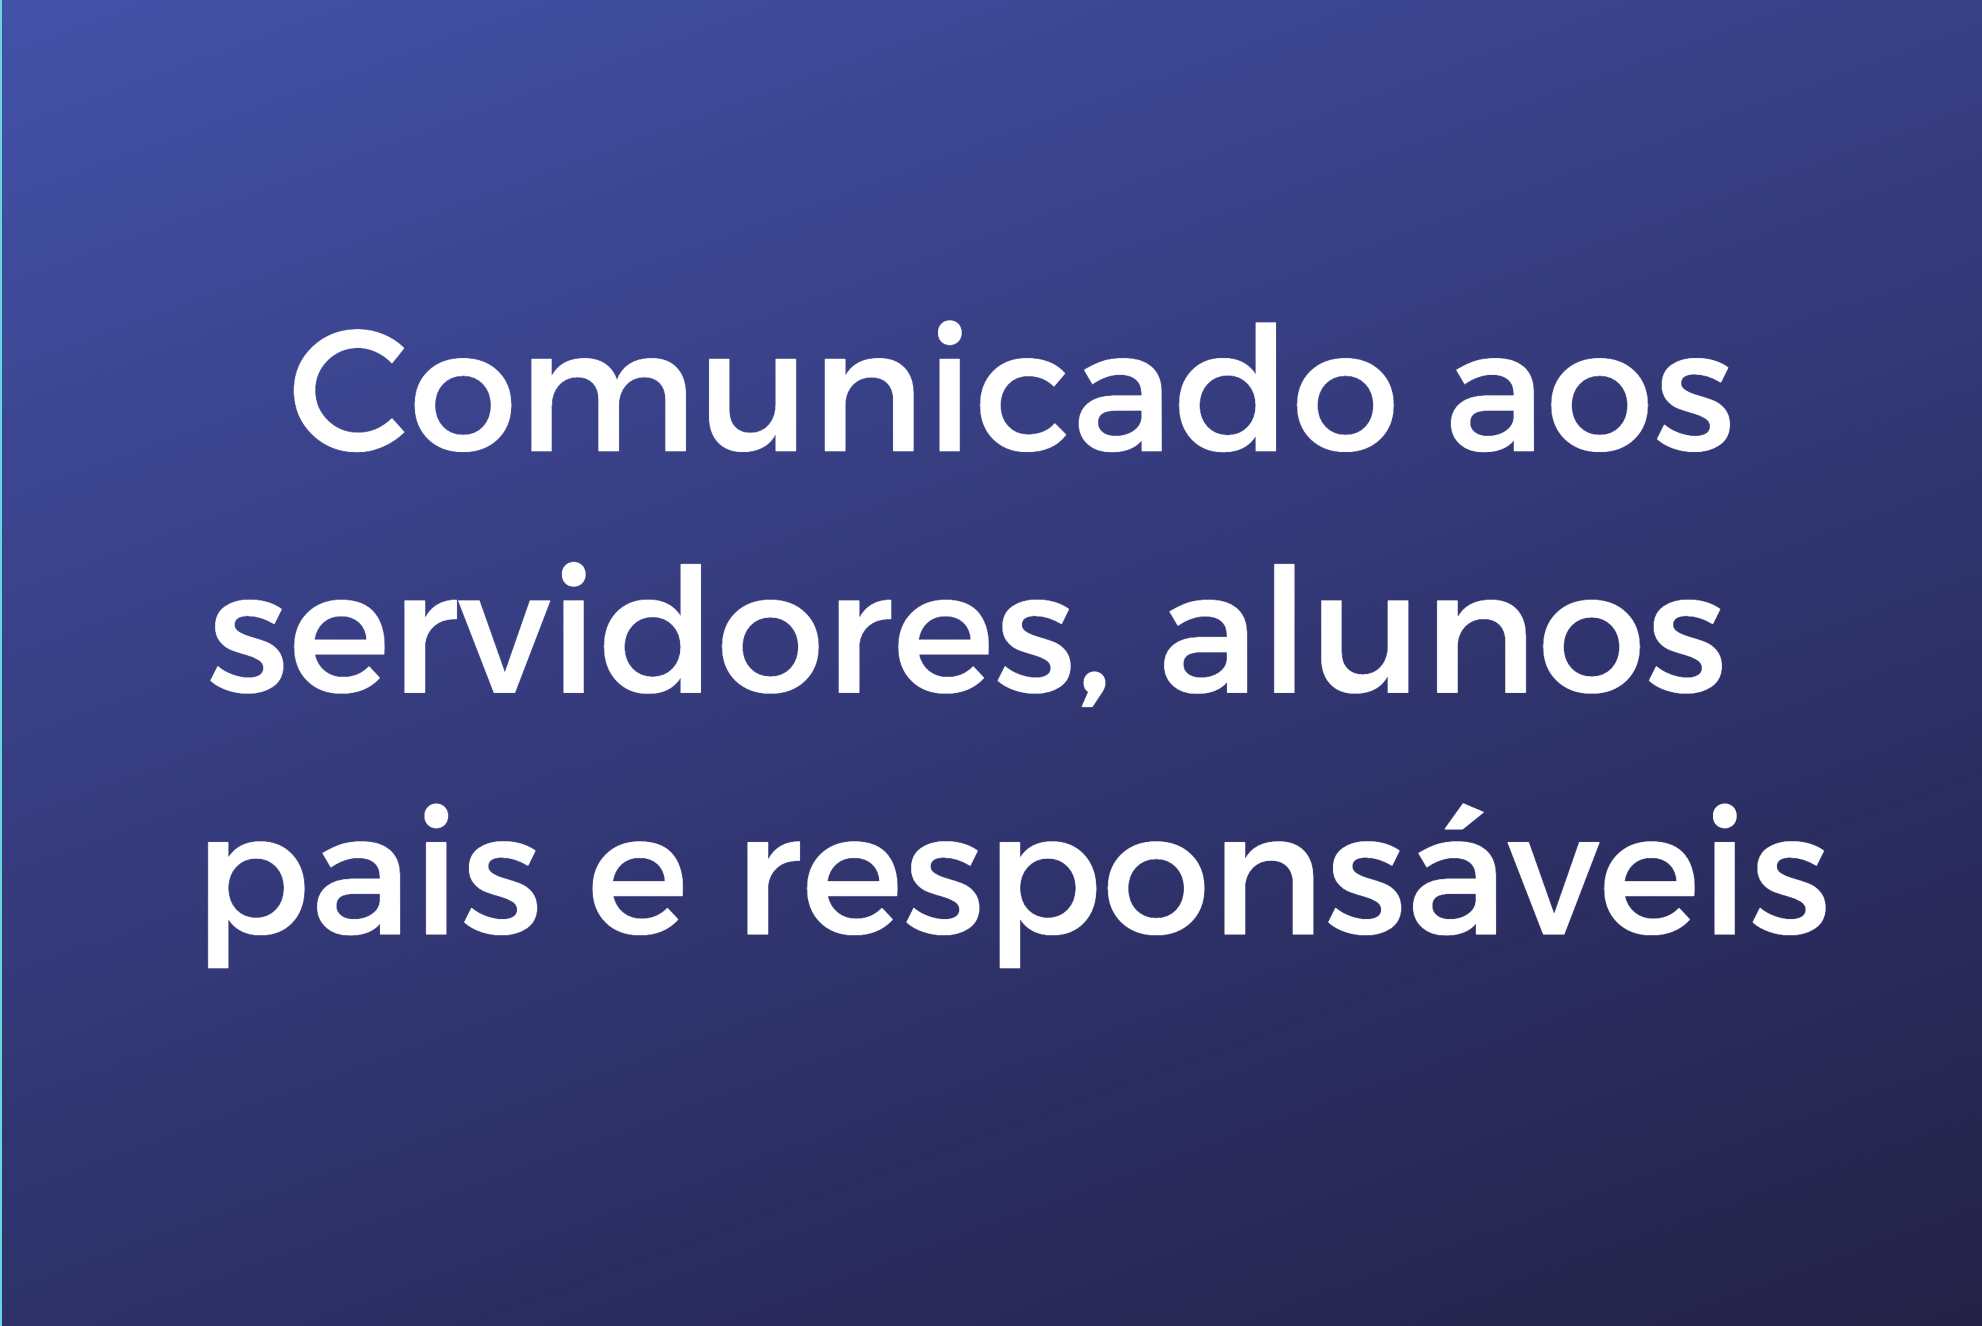 Descrição: sobre fundo azul e letras brancas, lê-se: "Comunicado aos servidores, alunos, pais e responsáveis".